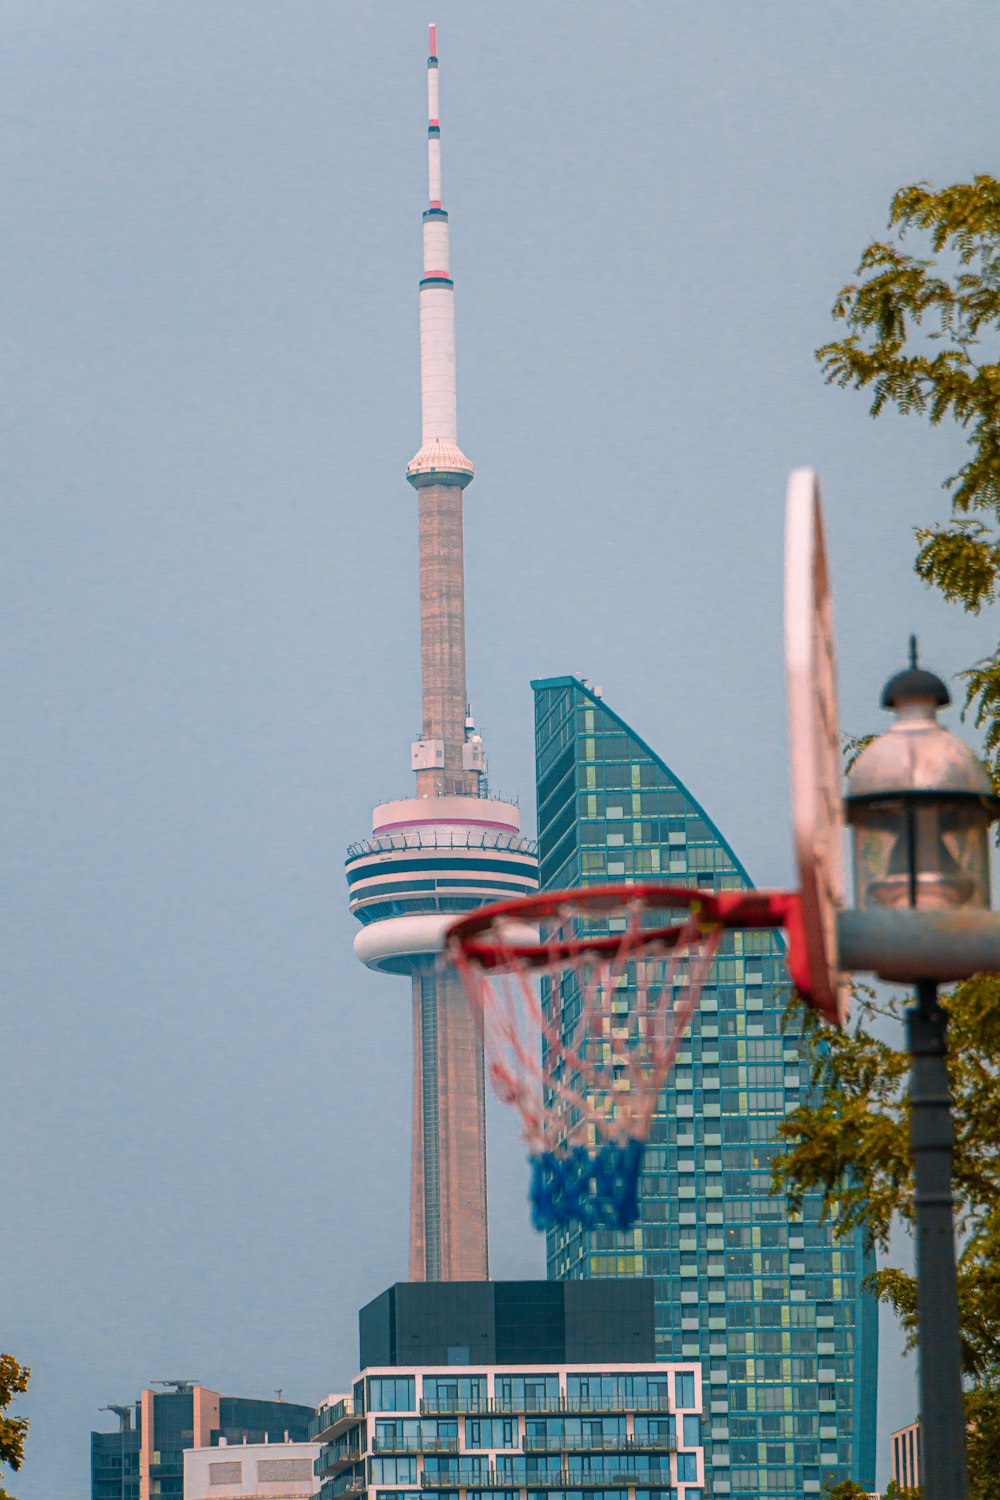 Un aro de baloncesto frente a un edificio alto